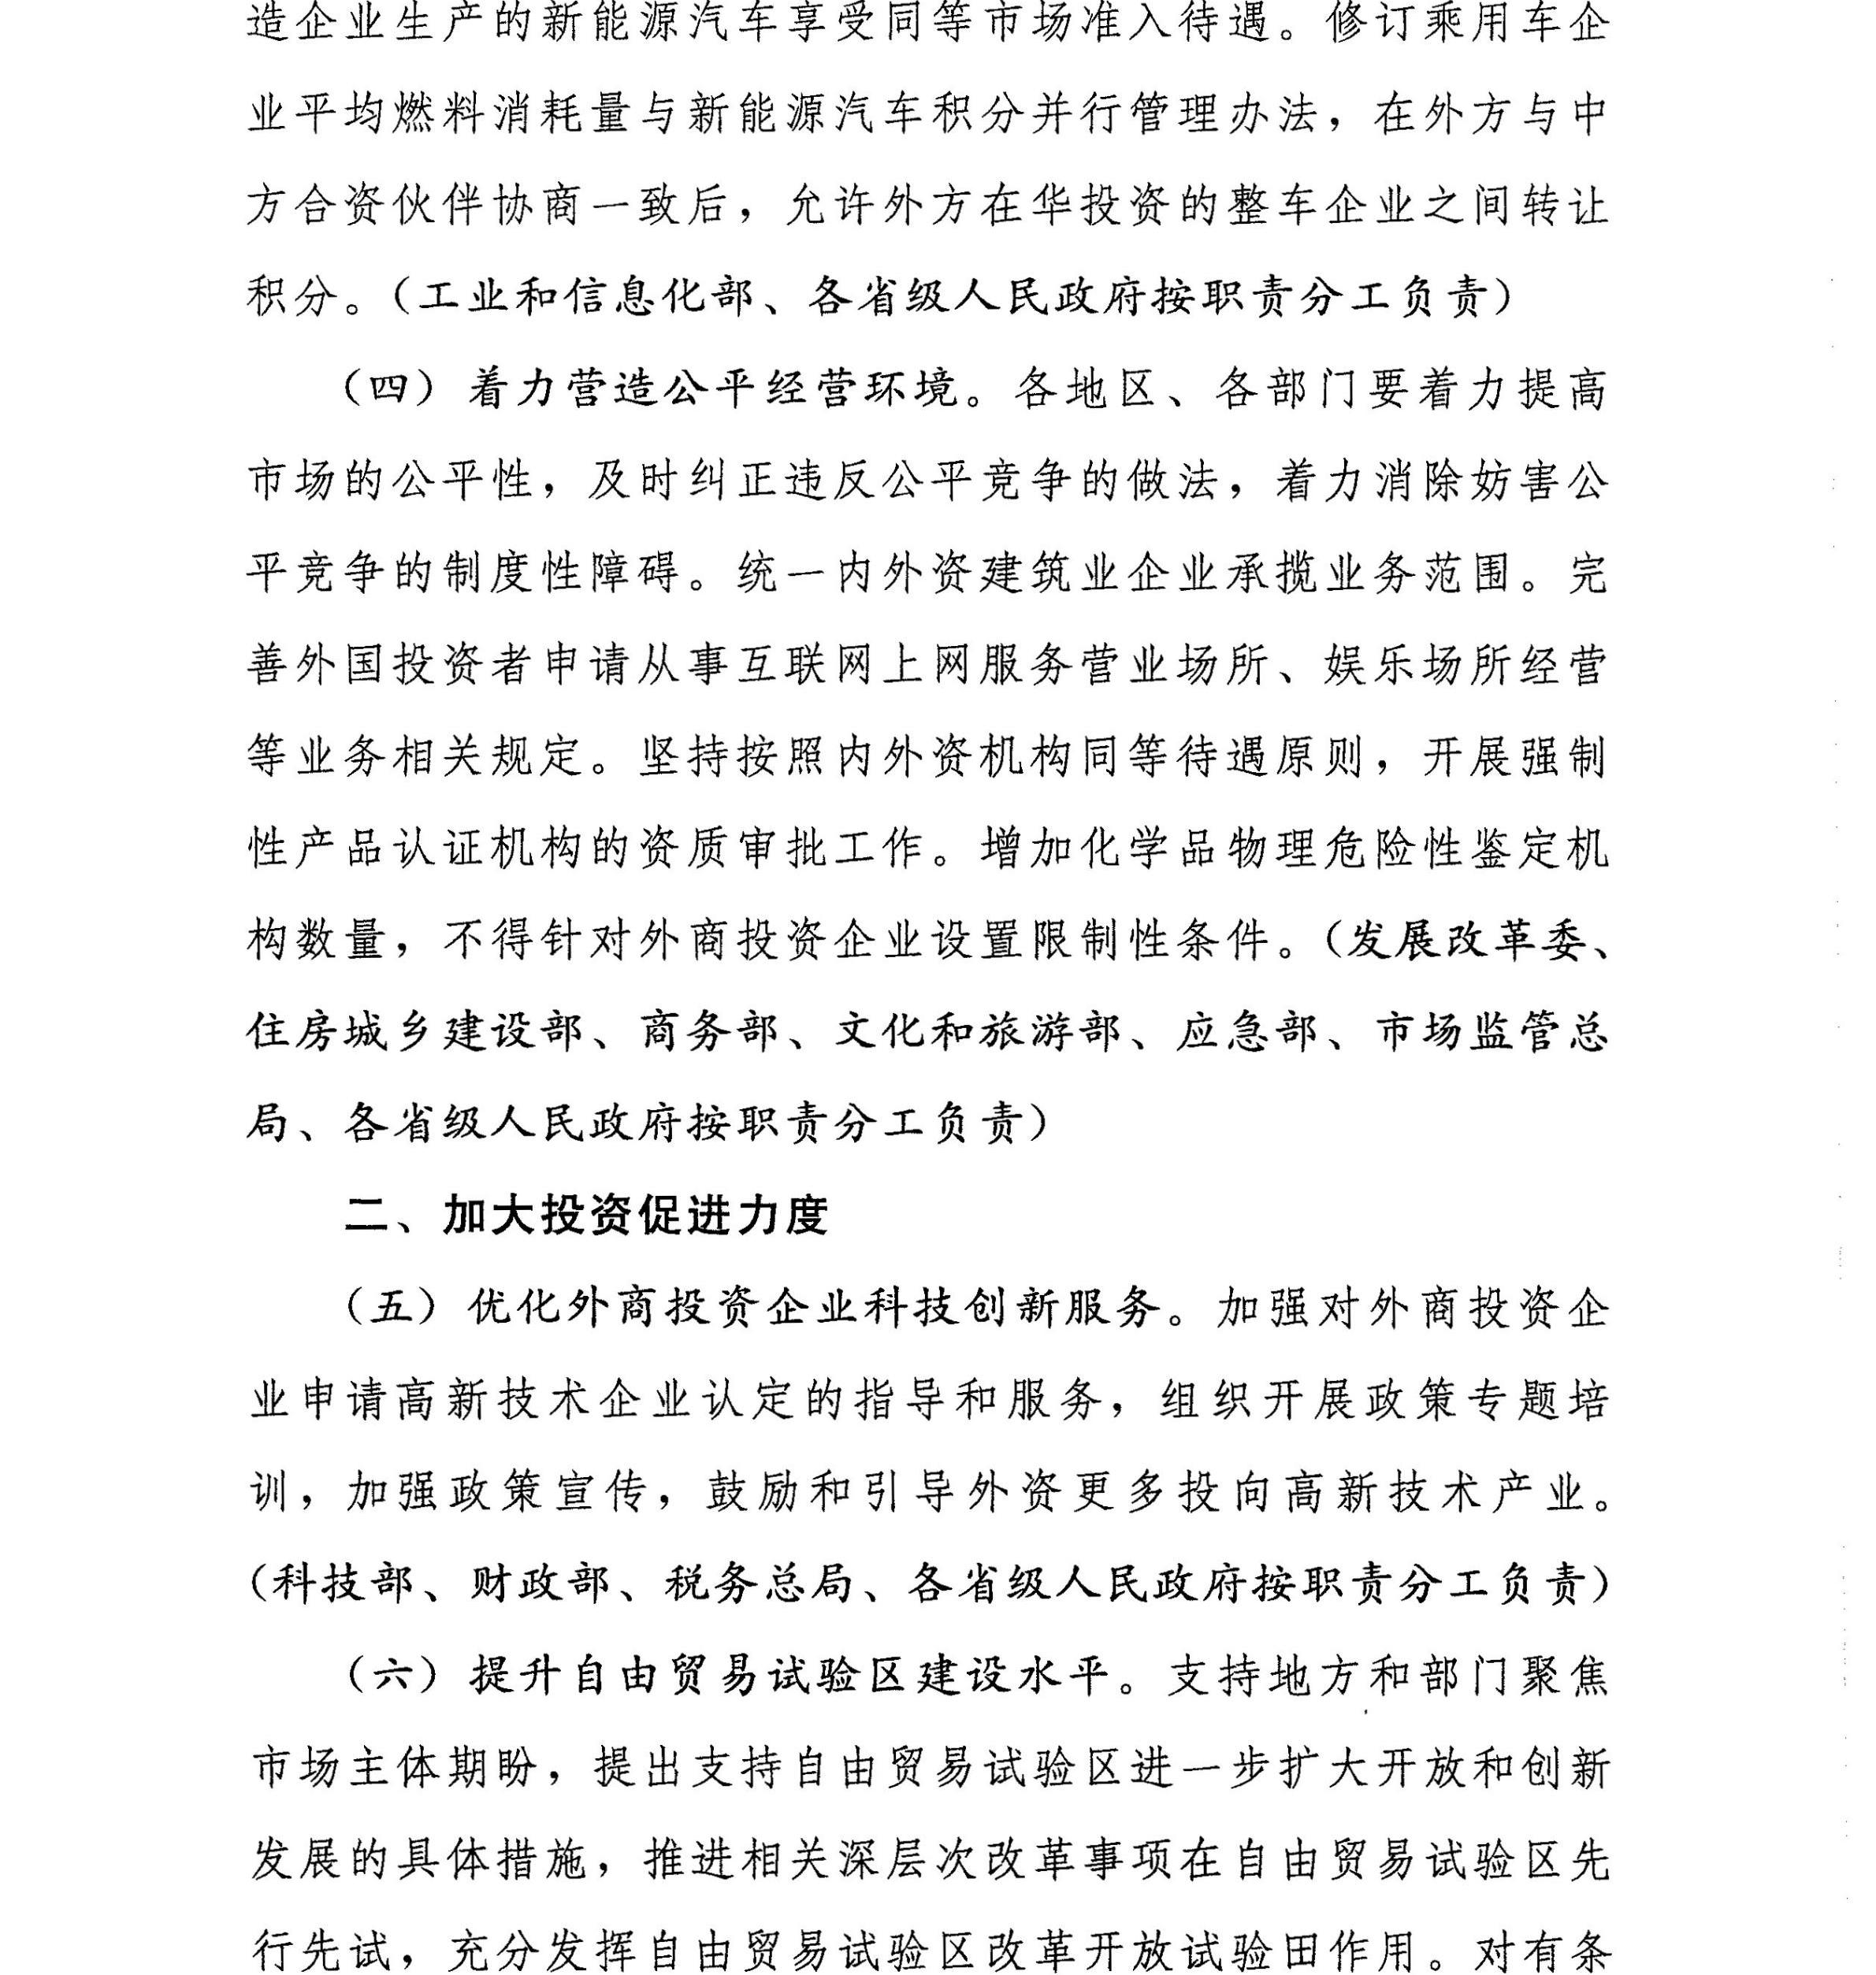 云南省人民政府转发国务院关于进一步做好利用外资工作文件的通知_07.jpg